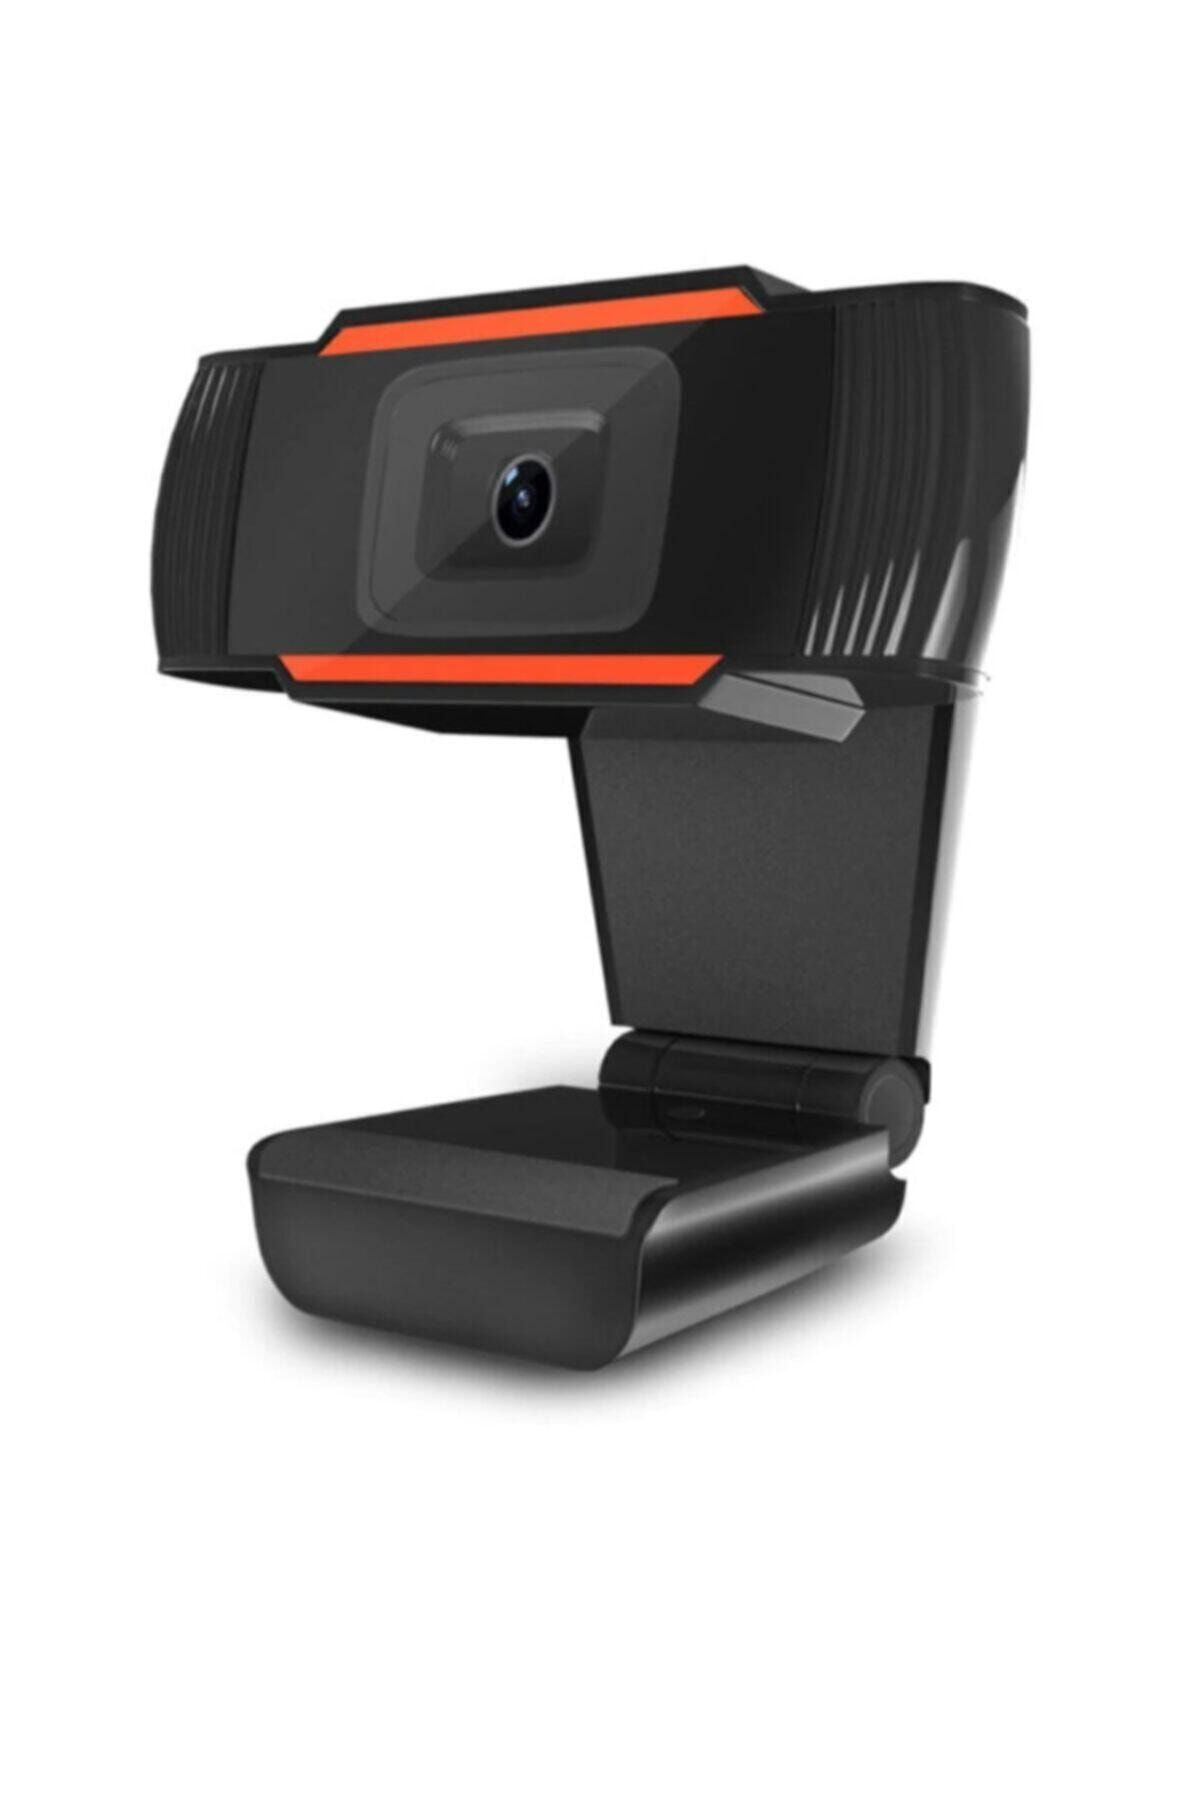 DEEP BLUE Mikrofonlu Hd Webcam Kamera 720p 30fps Pc Kamera